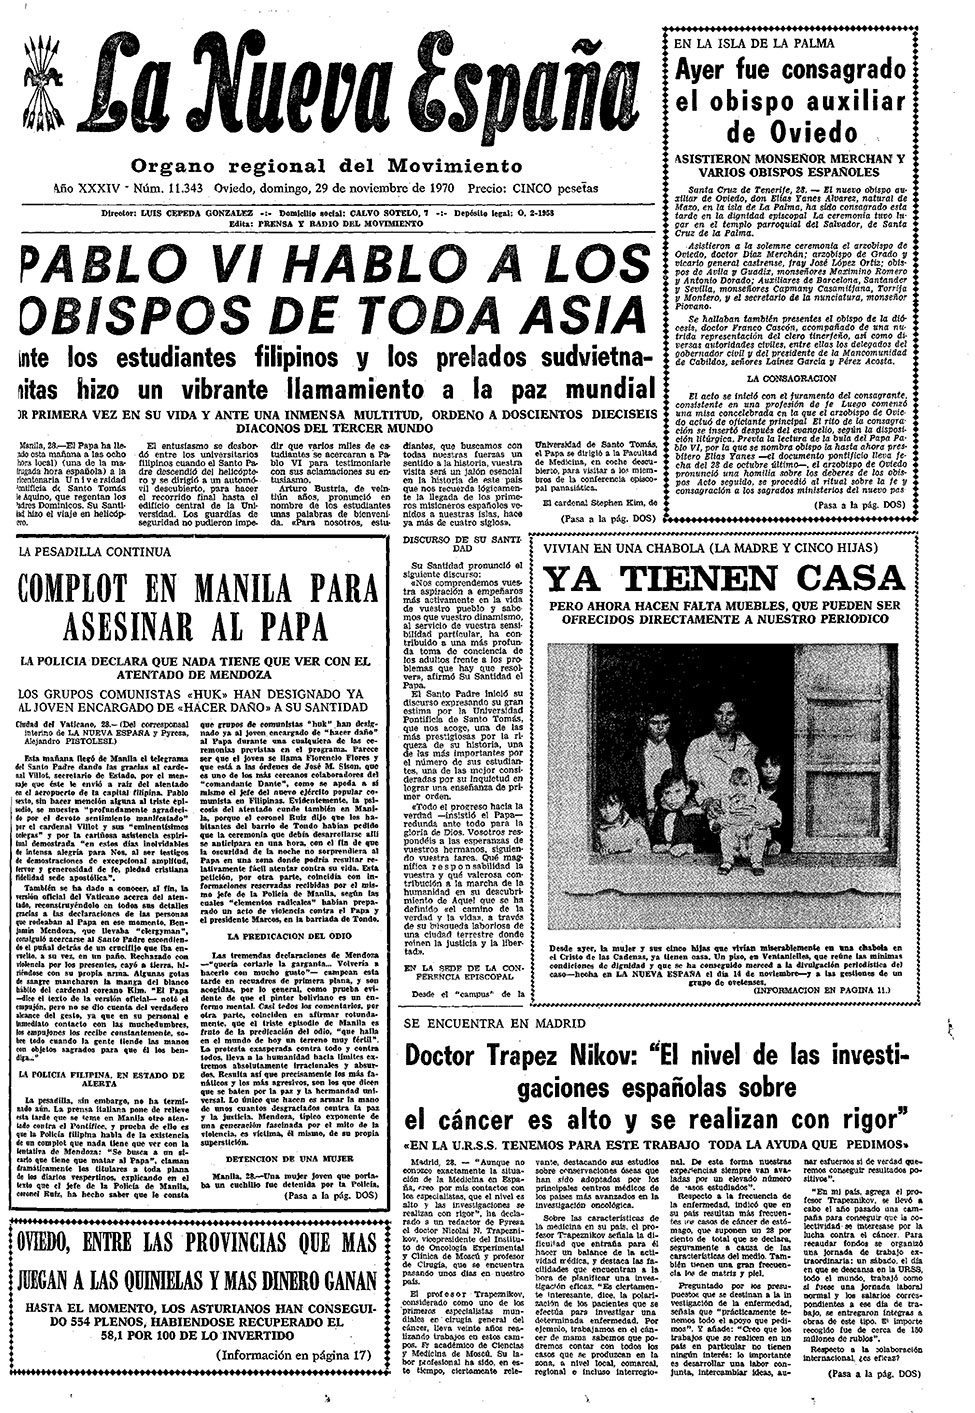 Portada del Domingo, 29 de Noviembre de 1970